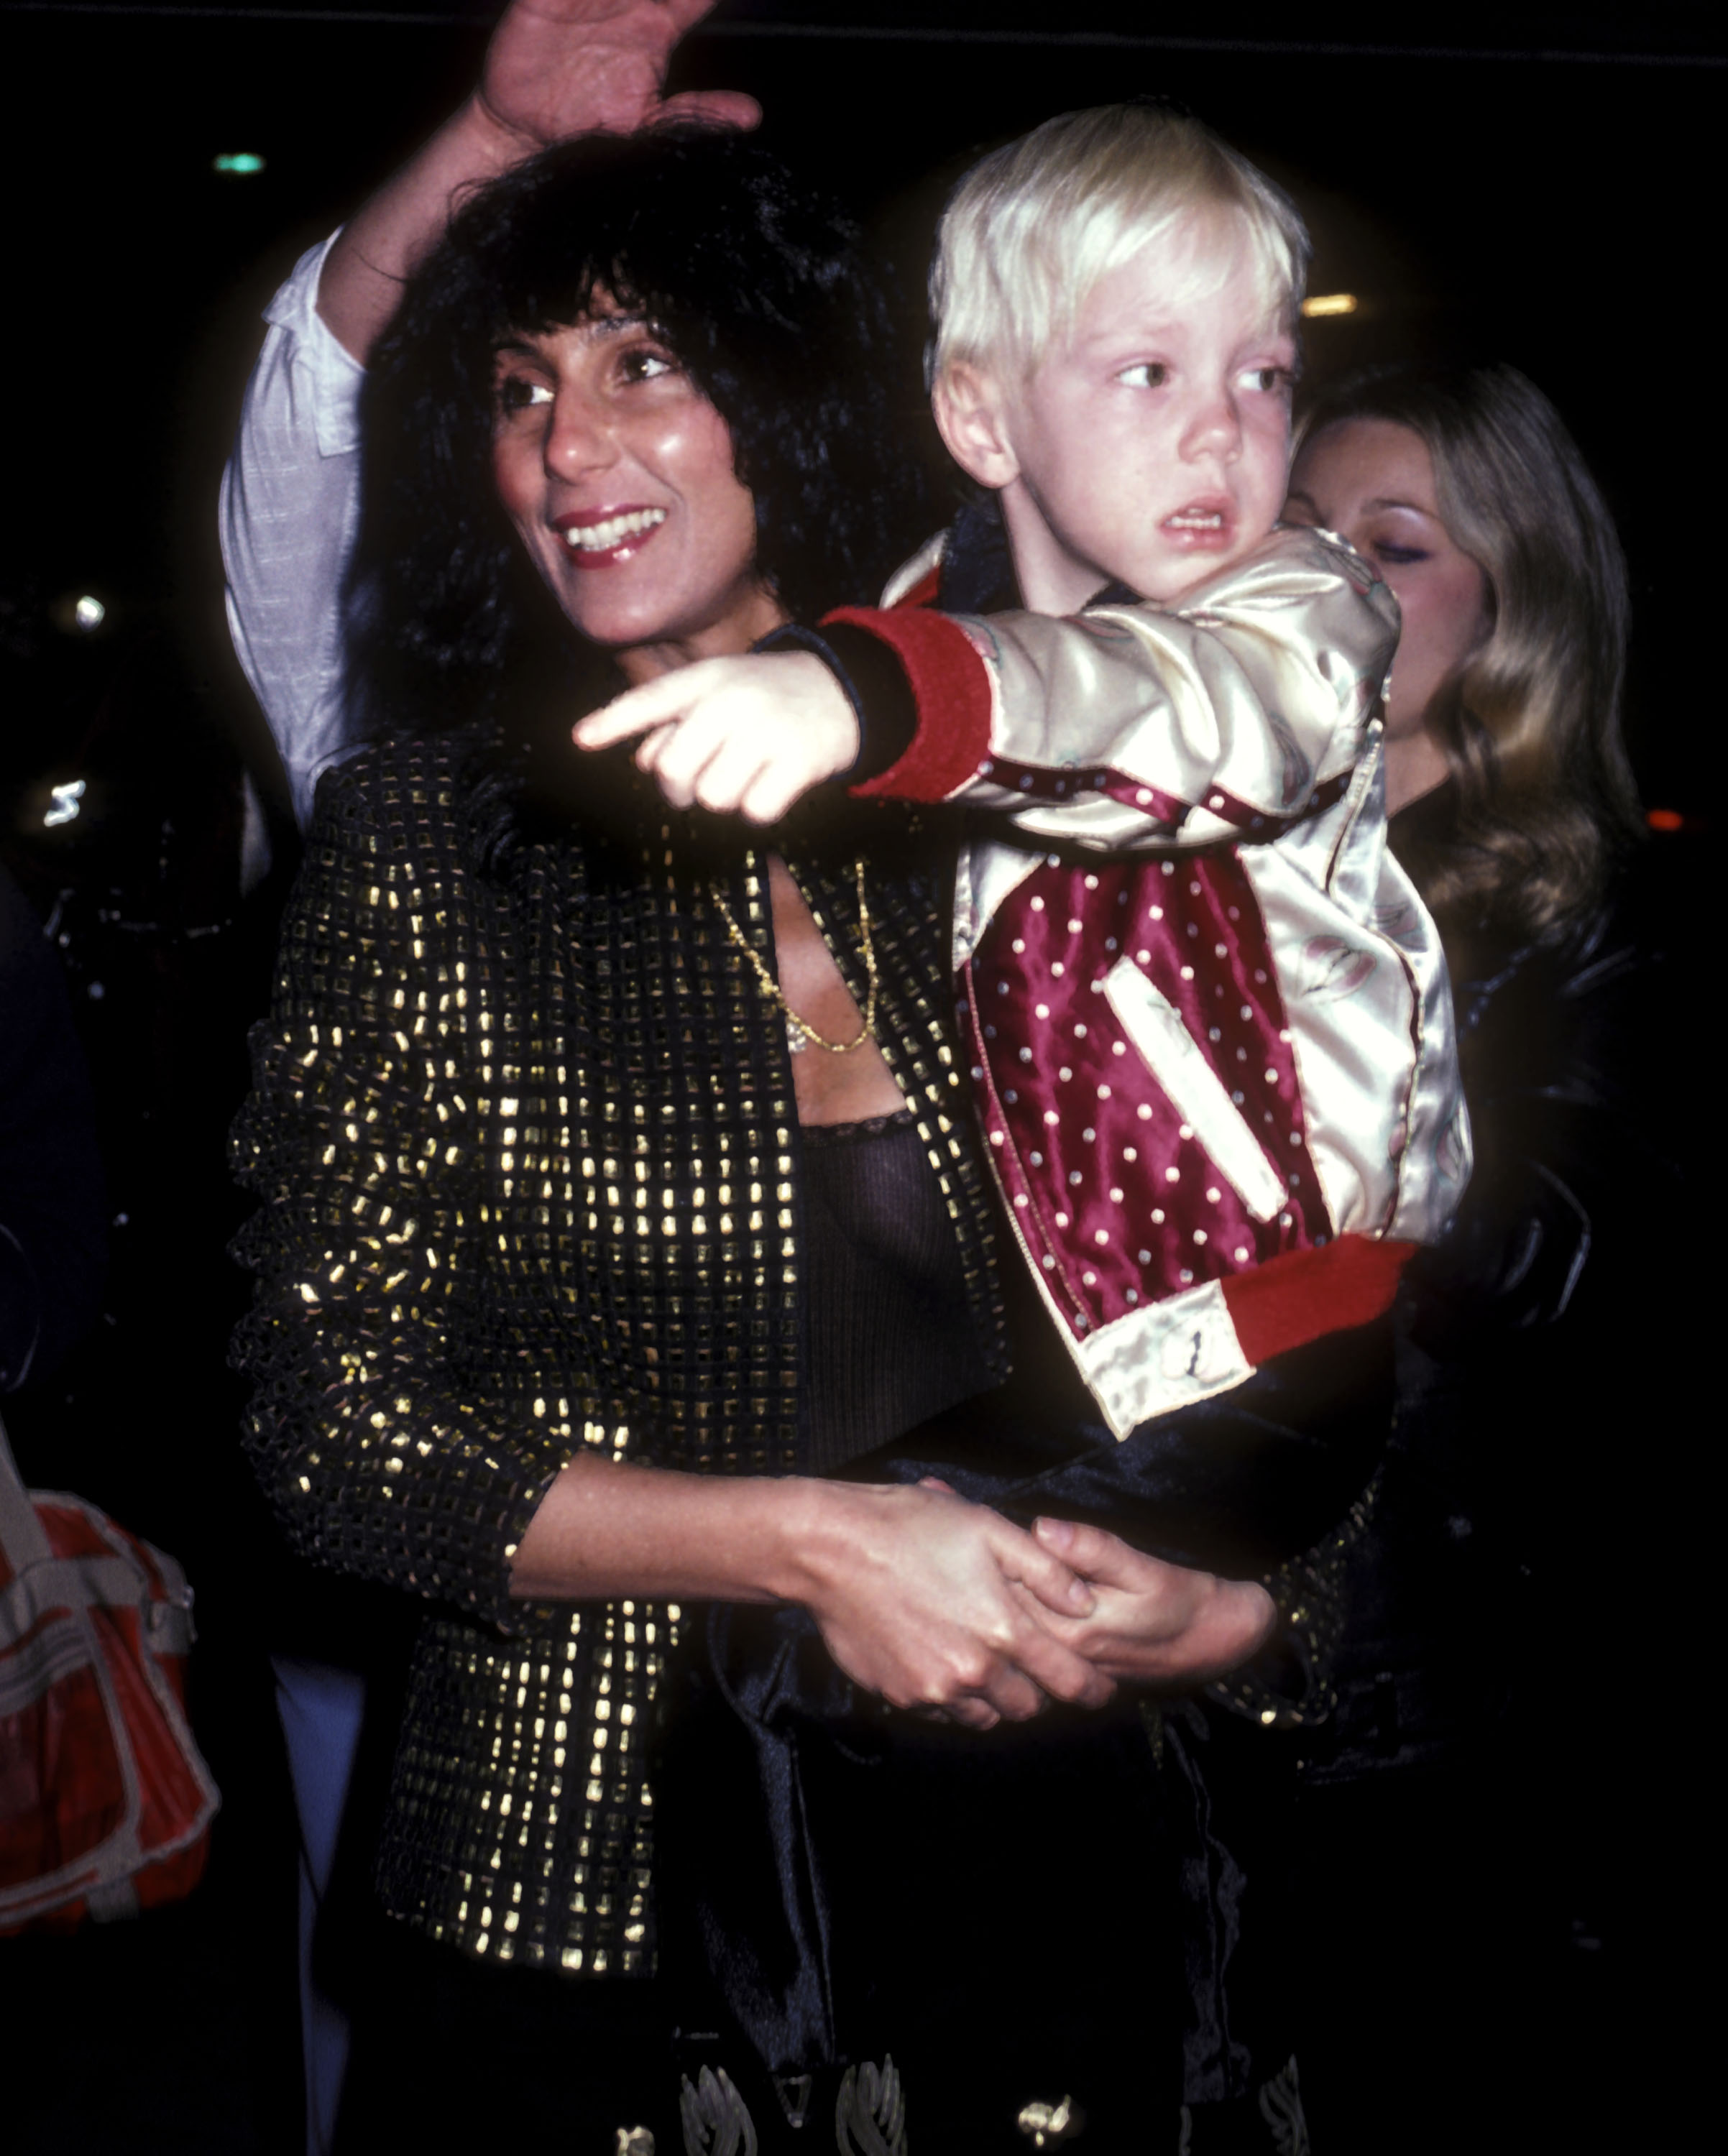 Cher et son fils Elijah Blue Allman assistent à la première de "The Rocky Horror Picture Show" le 24 février 1981 à Hollywood, Californie | Source : Getty Images